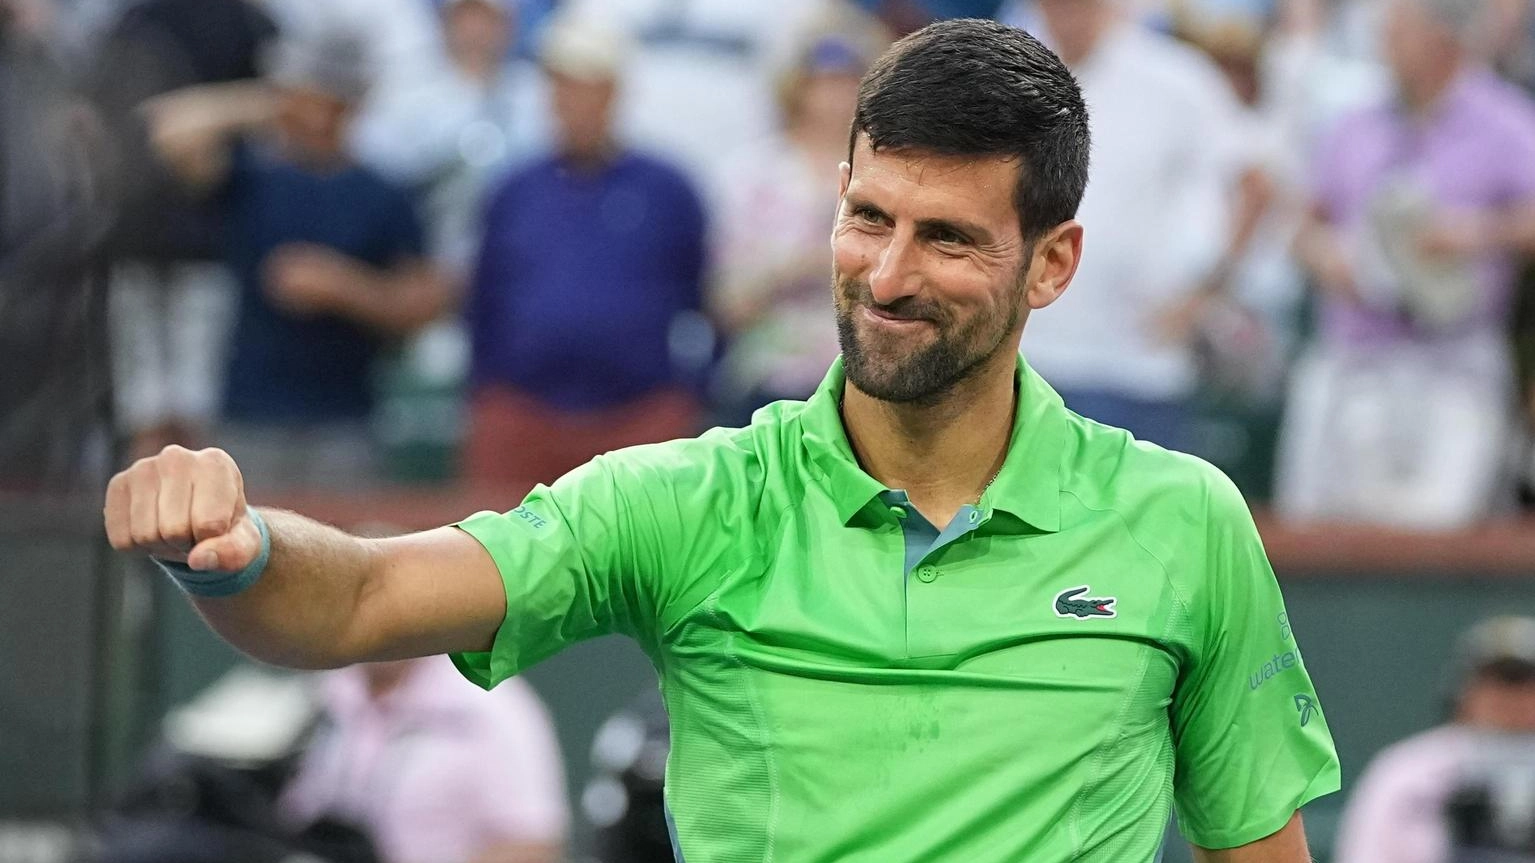 L'allarme di Djokovic, 'gioco un pessimo tennis, cosi' non va'